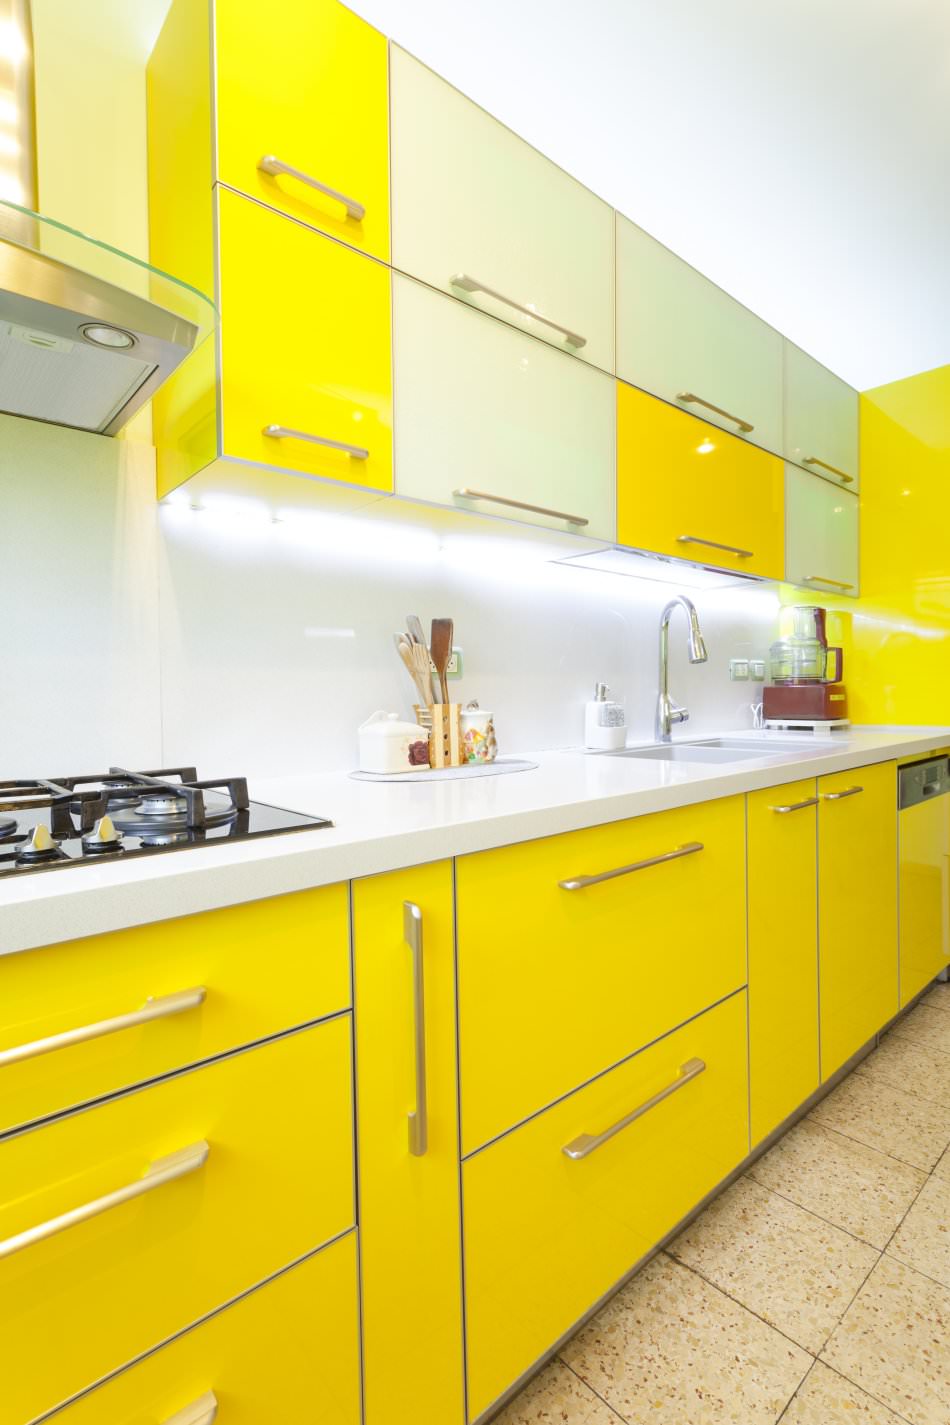 RAL 1026 Luminous Yellow High Gloss Kitchen Cabinets